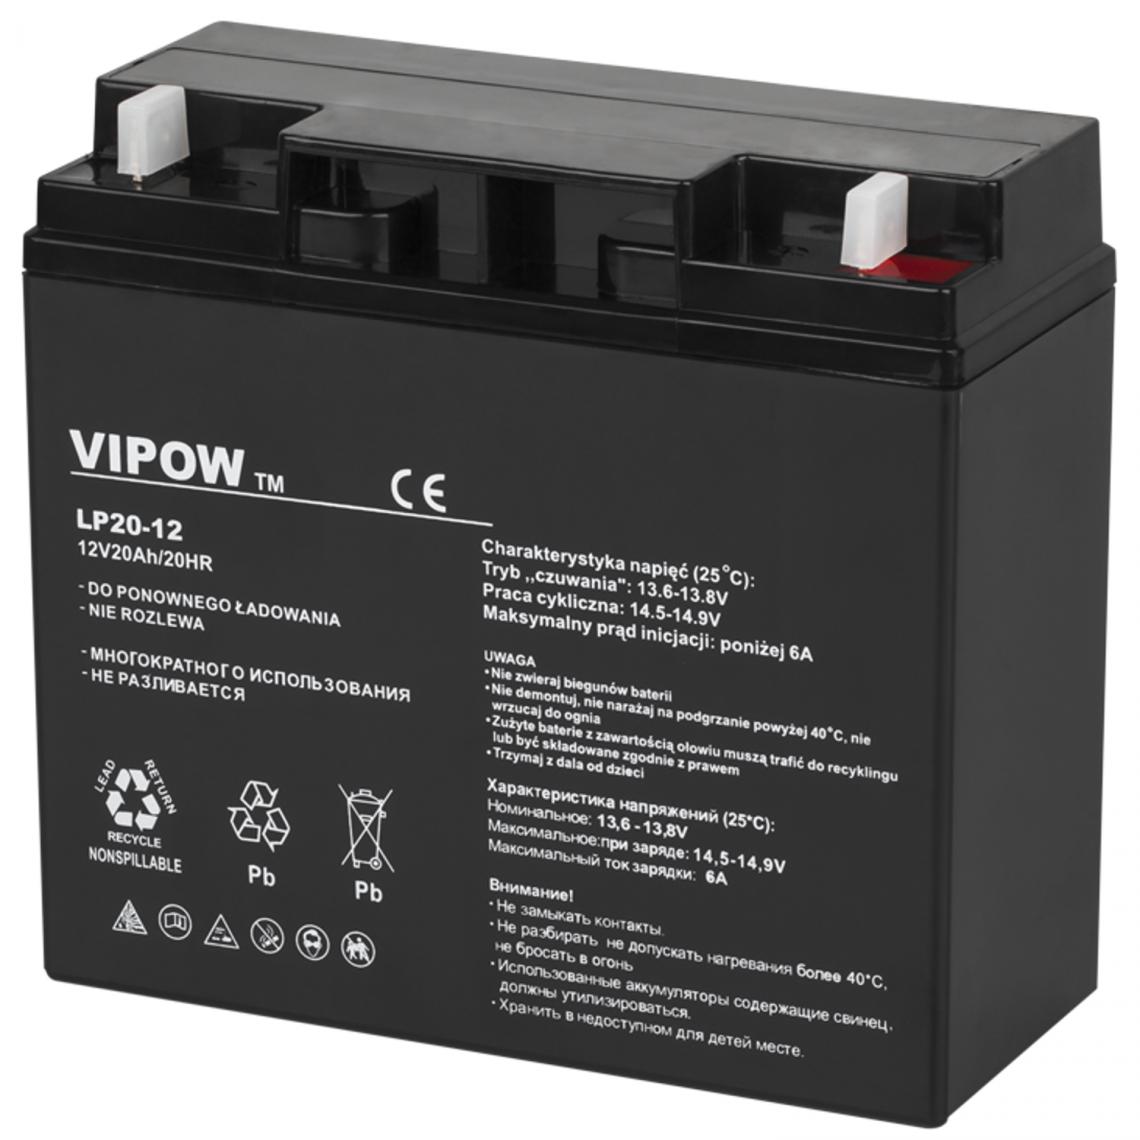 Sans Marque - Batterie gel rechargeable 12V 20Ah sans entretien Vipow - Accessoires alimentation